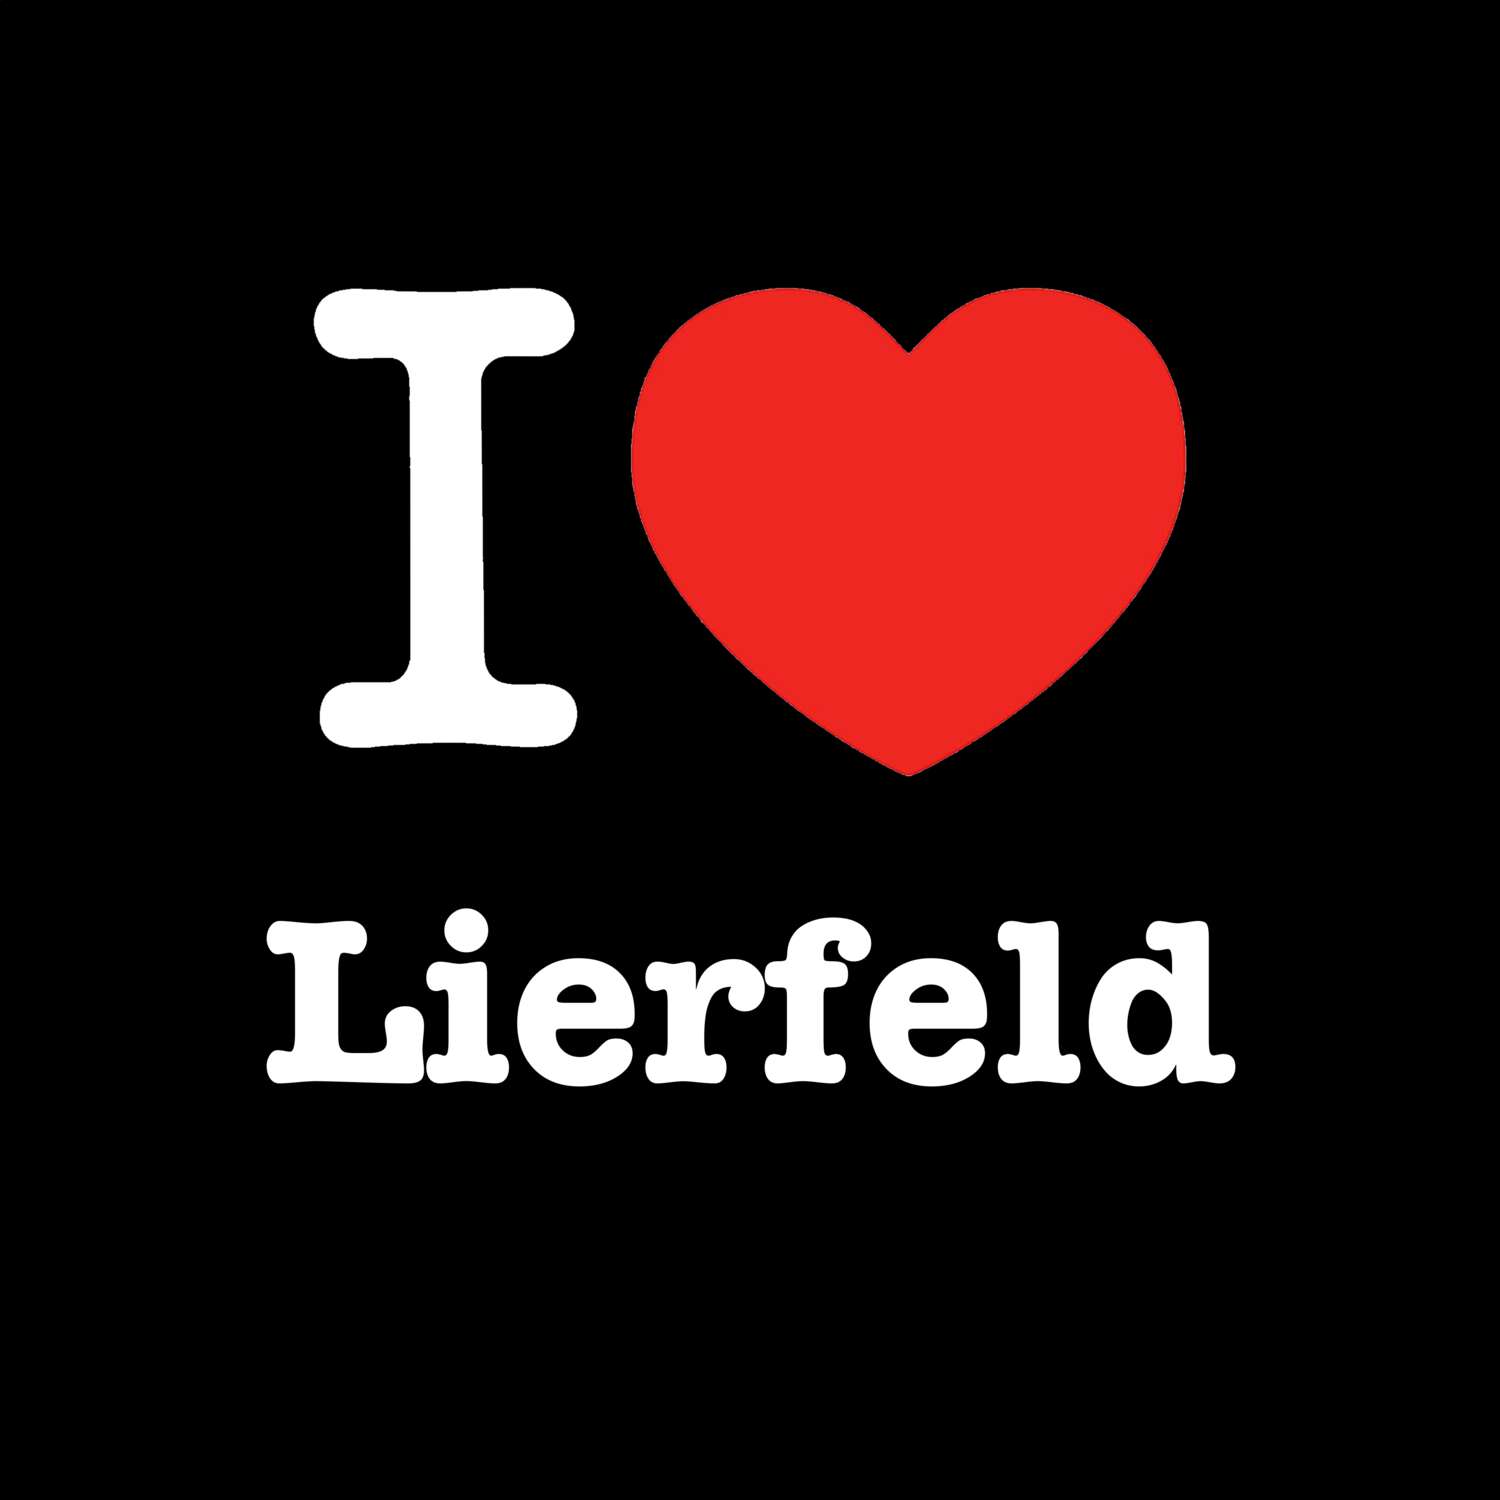 Lierfeld T-Shirt »I love«